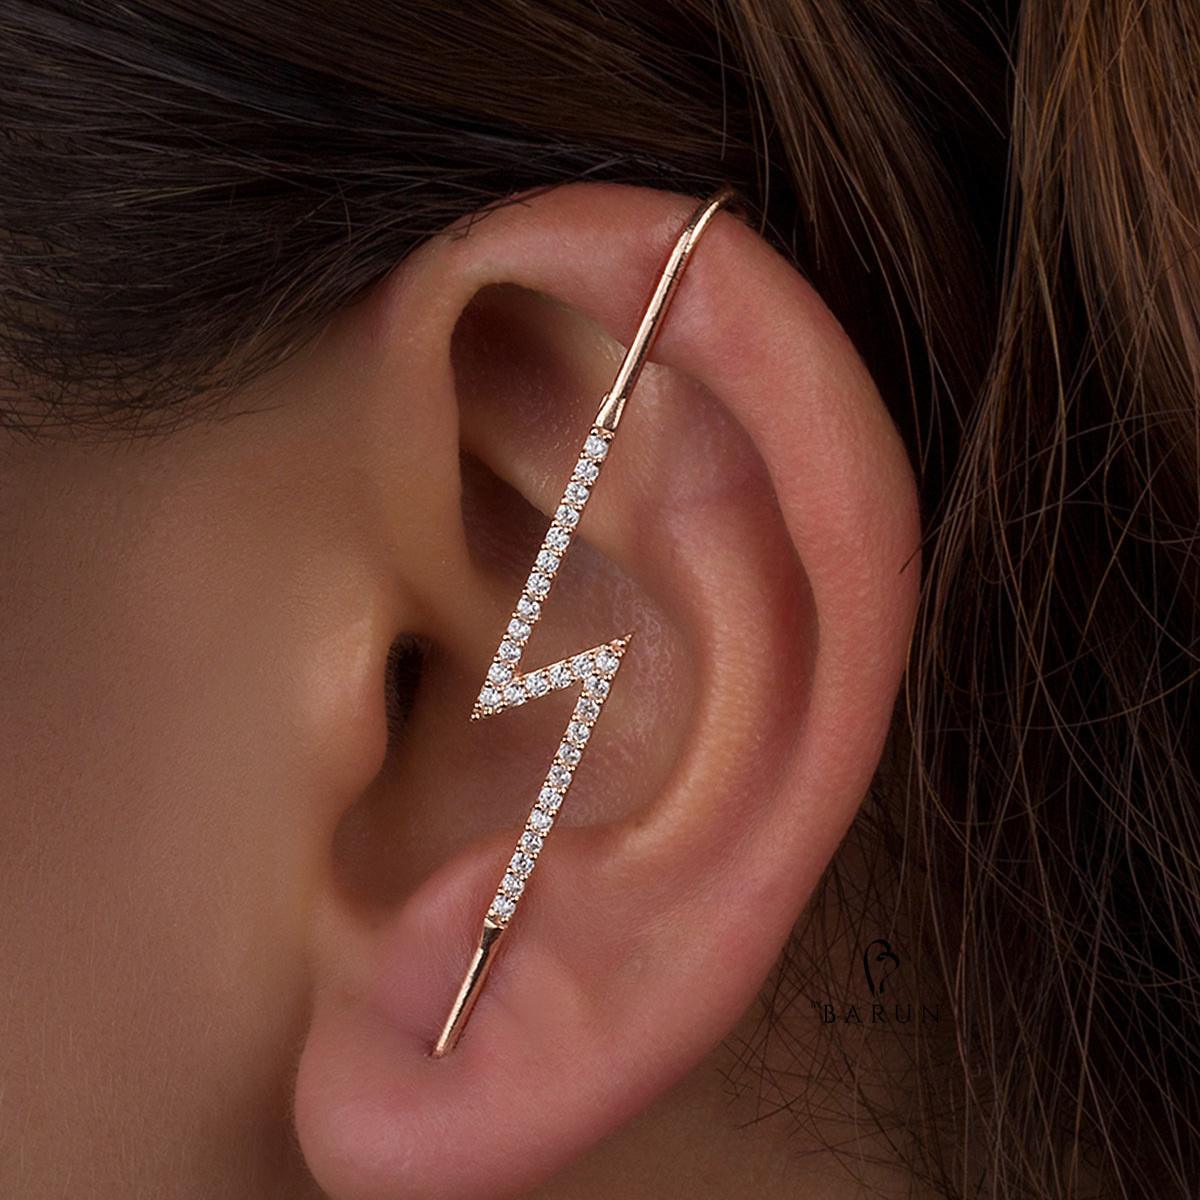 Lightning Stud Earrings • Lightning Bolt Earrings Studs • Gift For Her - Trending Silver Gifts